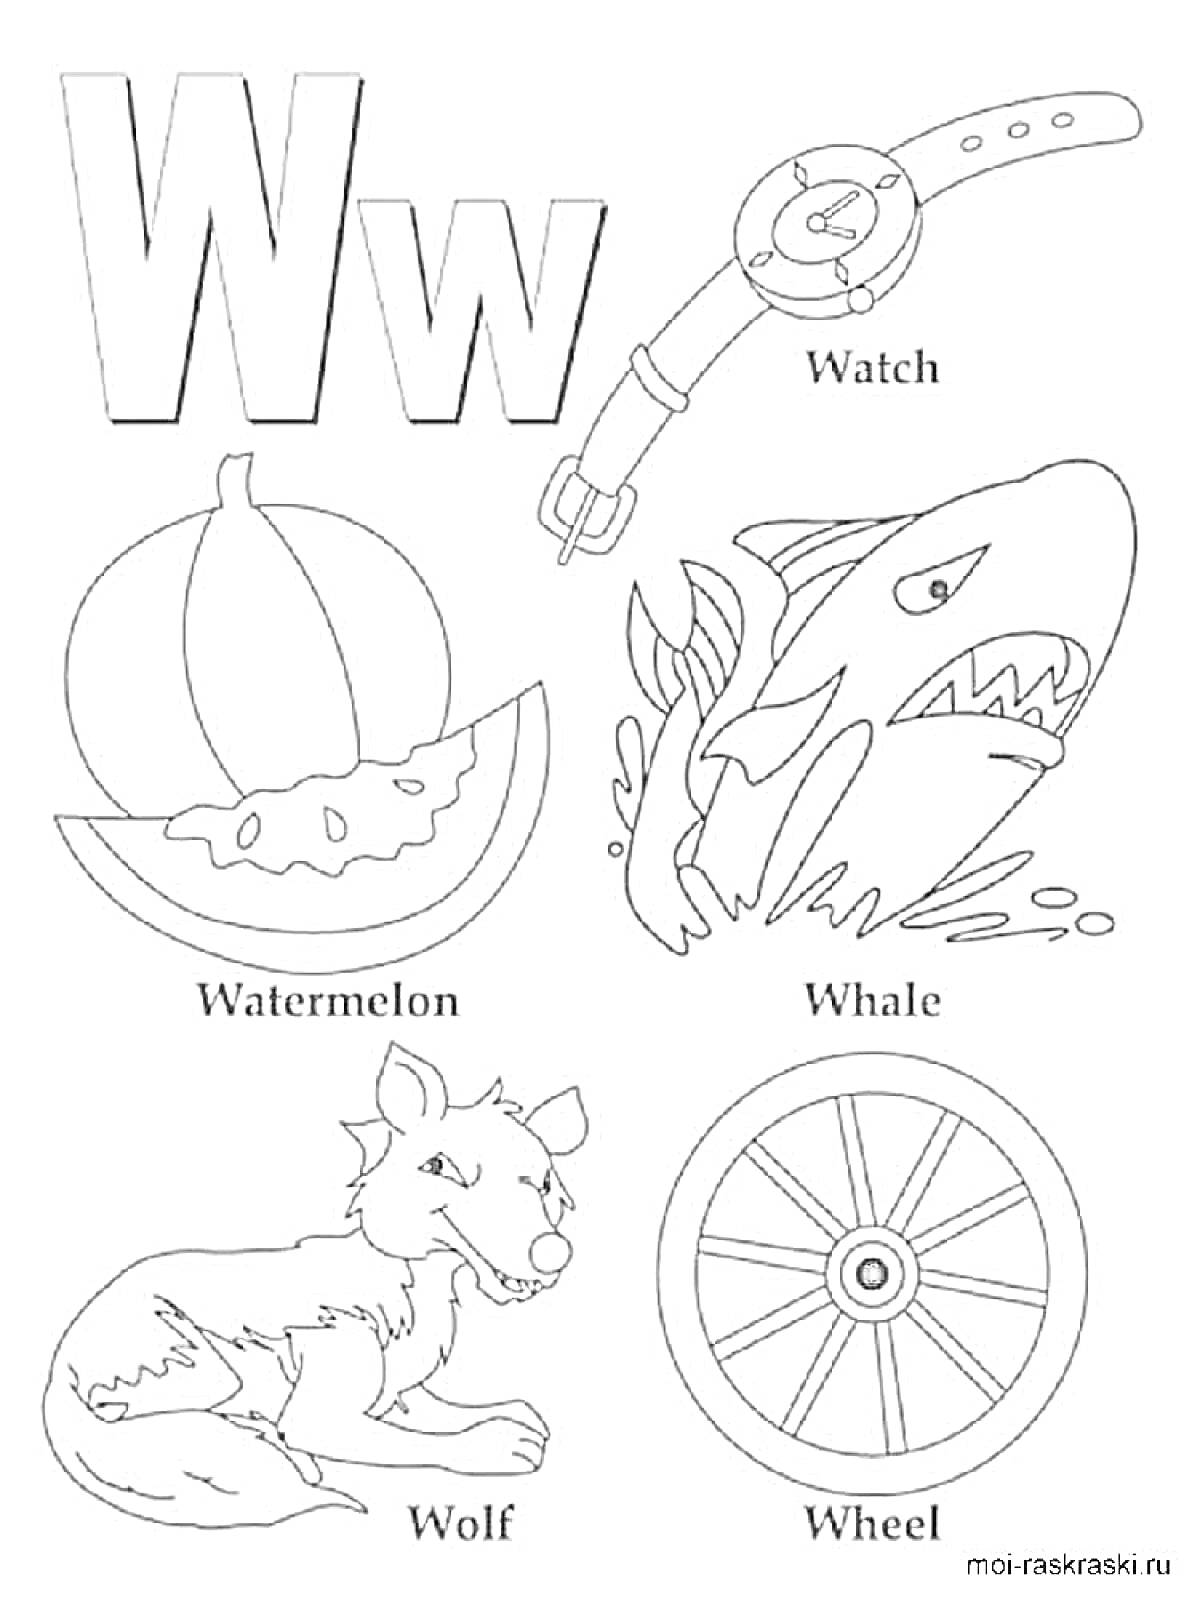 Буква W с изображениями предметов и животных на эту букву